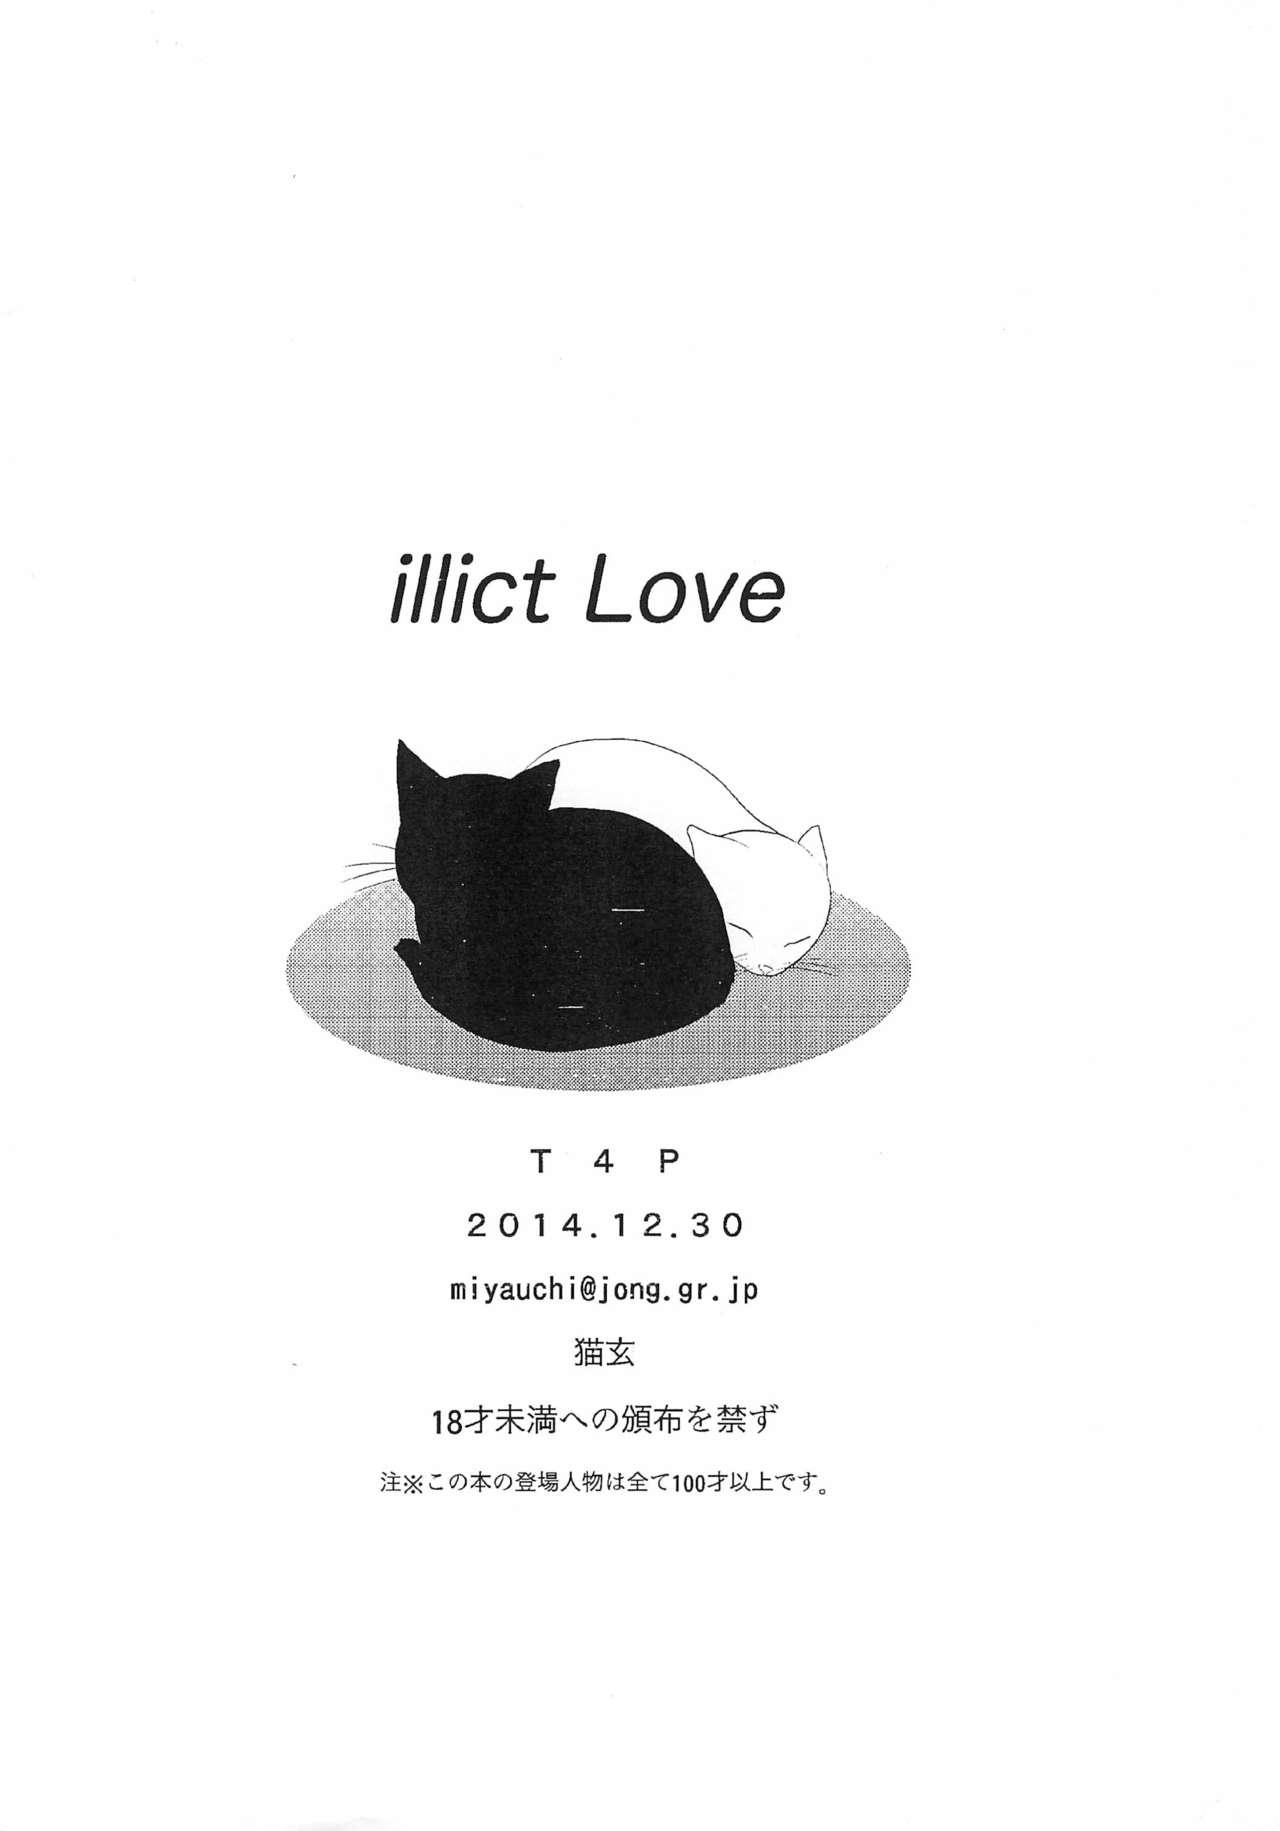 illict Love 19